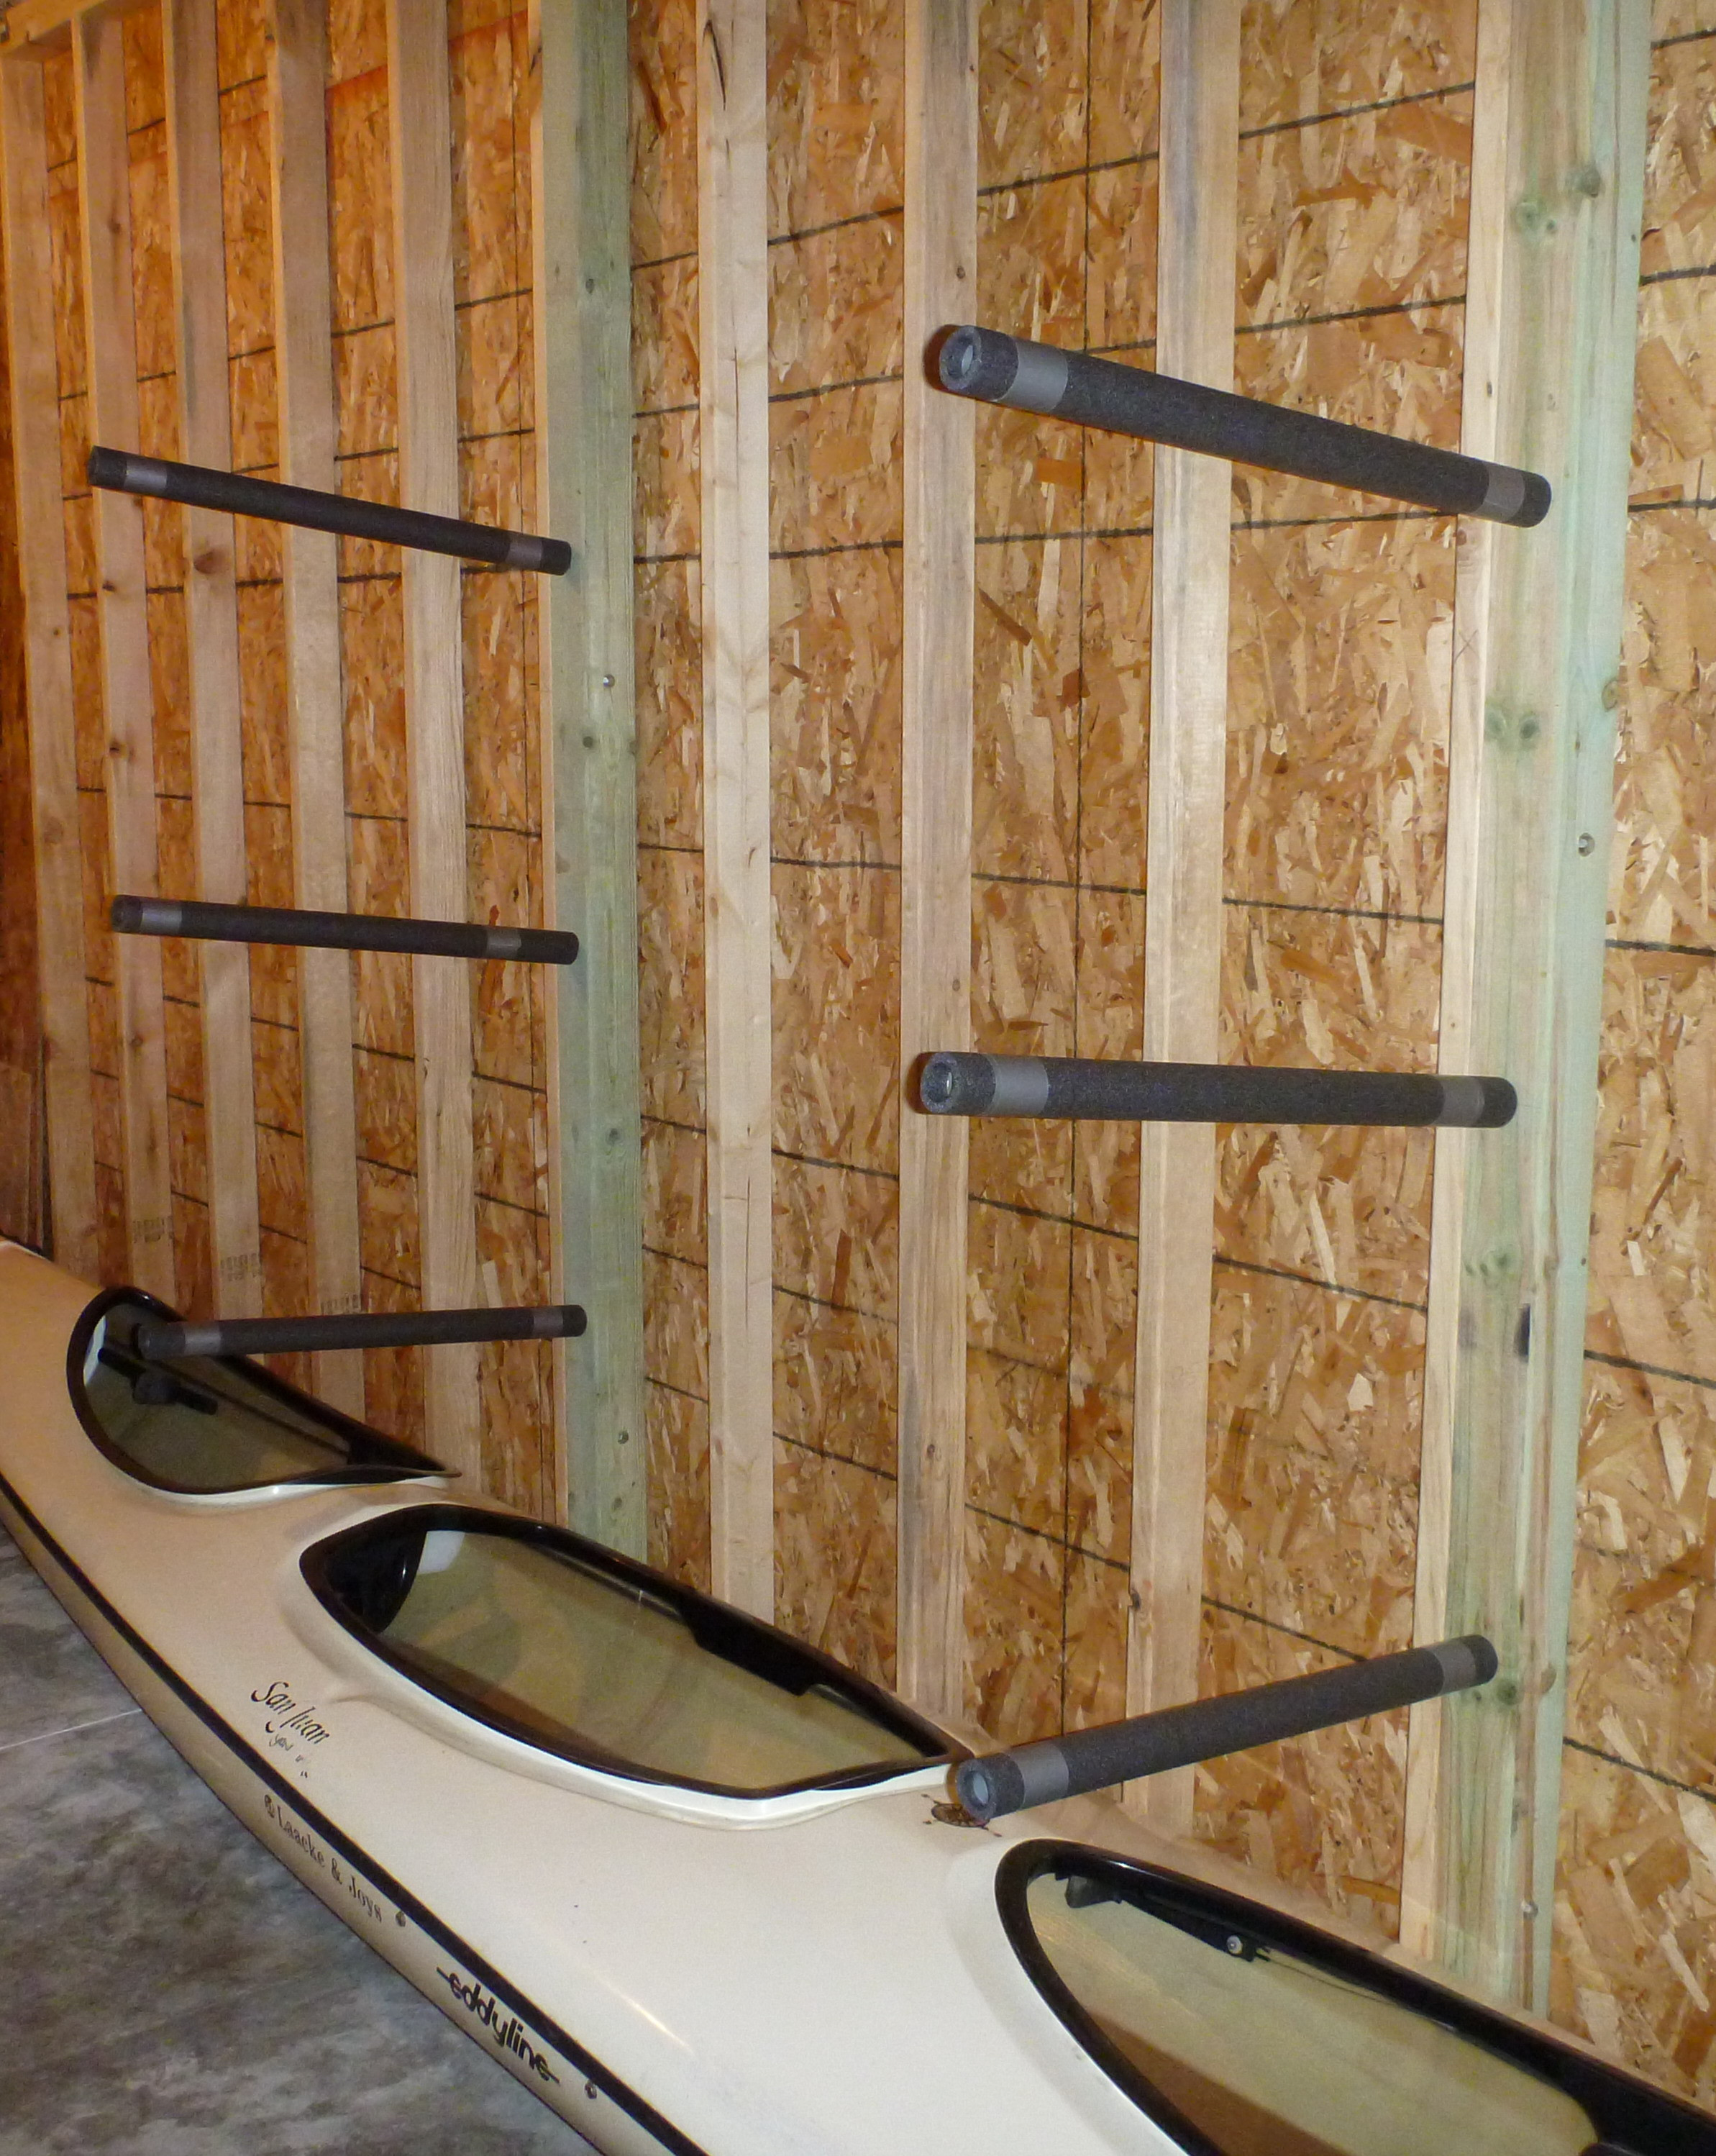 Best ideas about Kayak Rack DIY
. Save or Pin Building Kayak Racks Now.